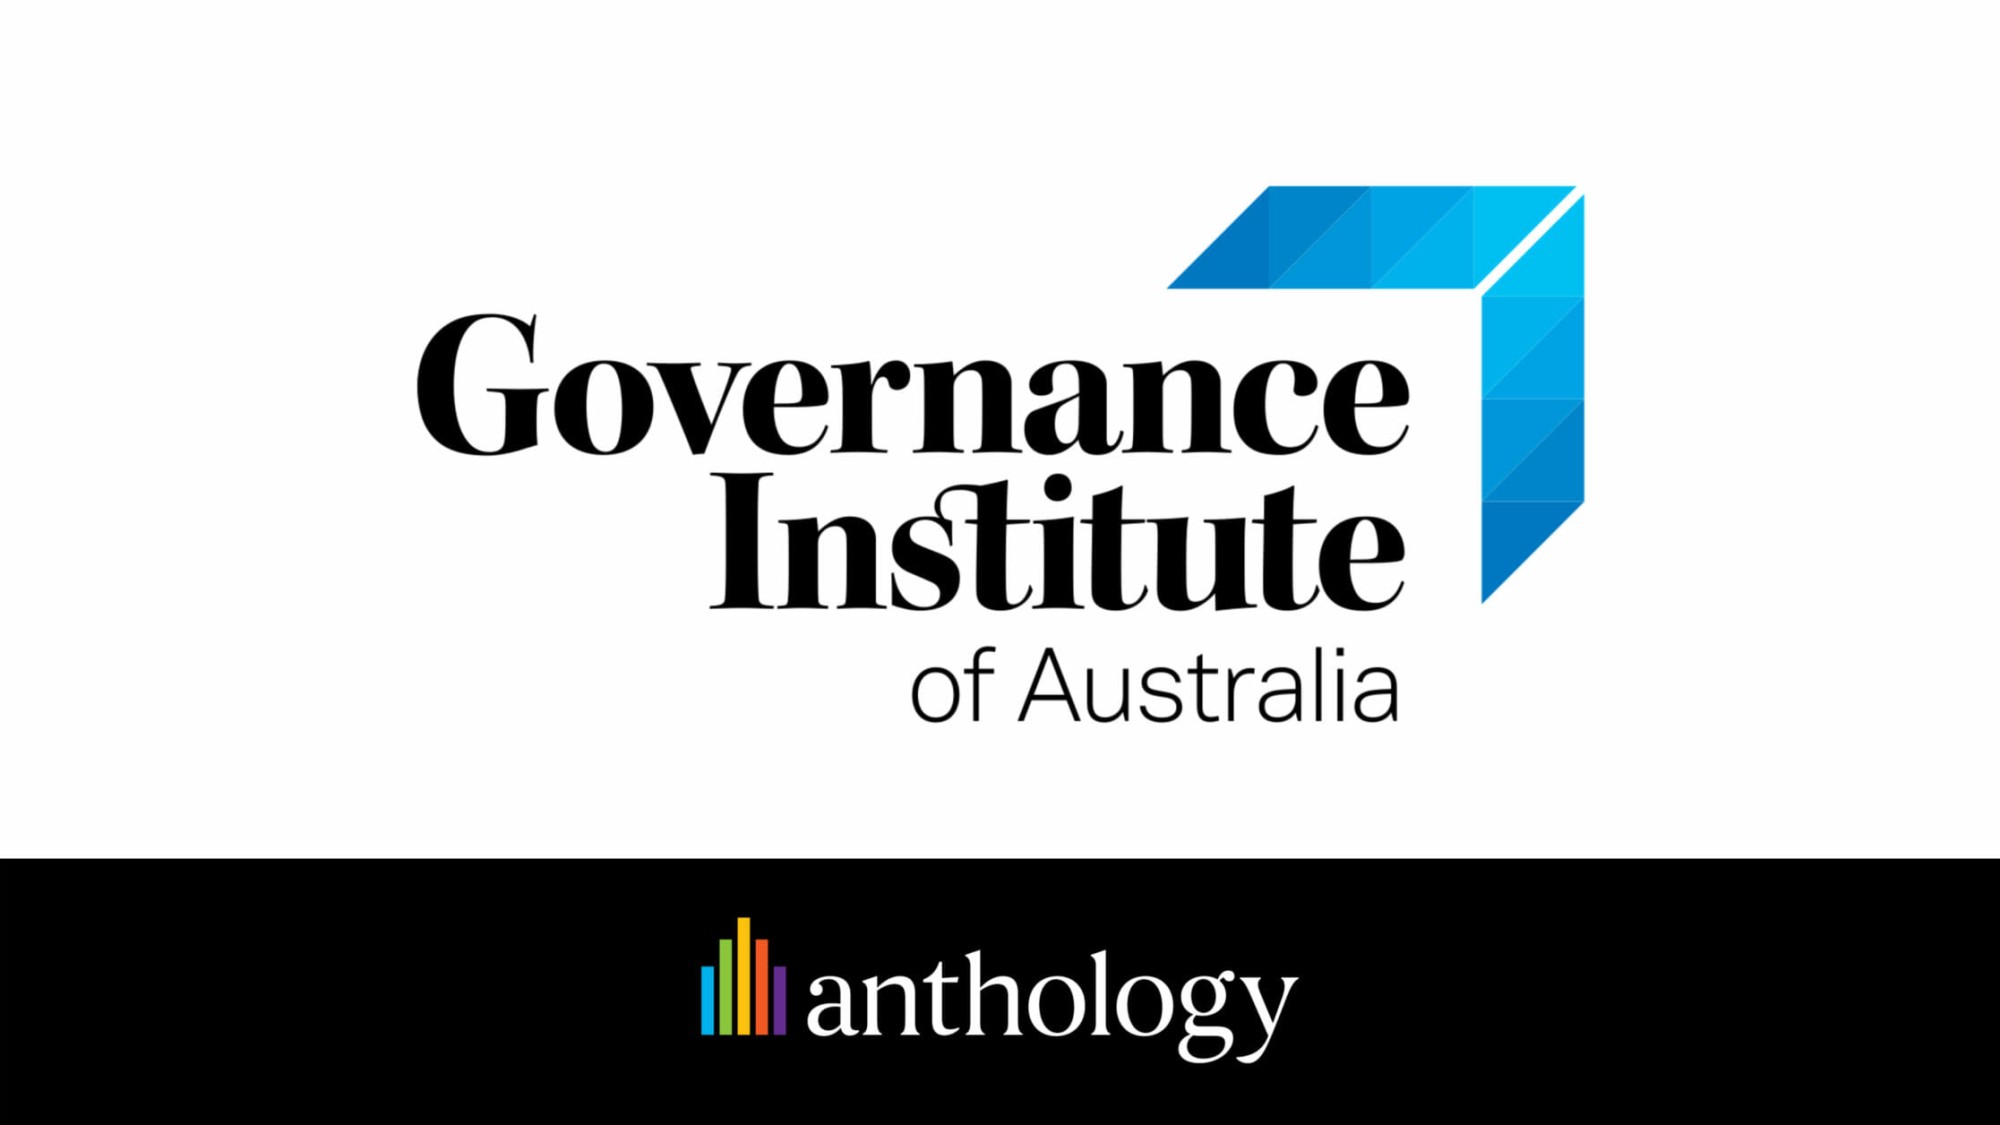 Governance Institute of Australia logo lockup with the Anthology logo